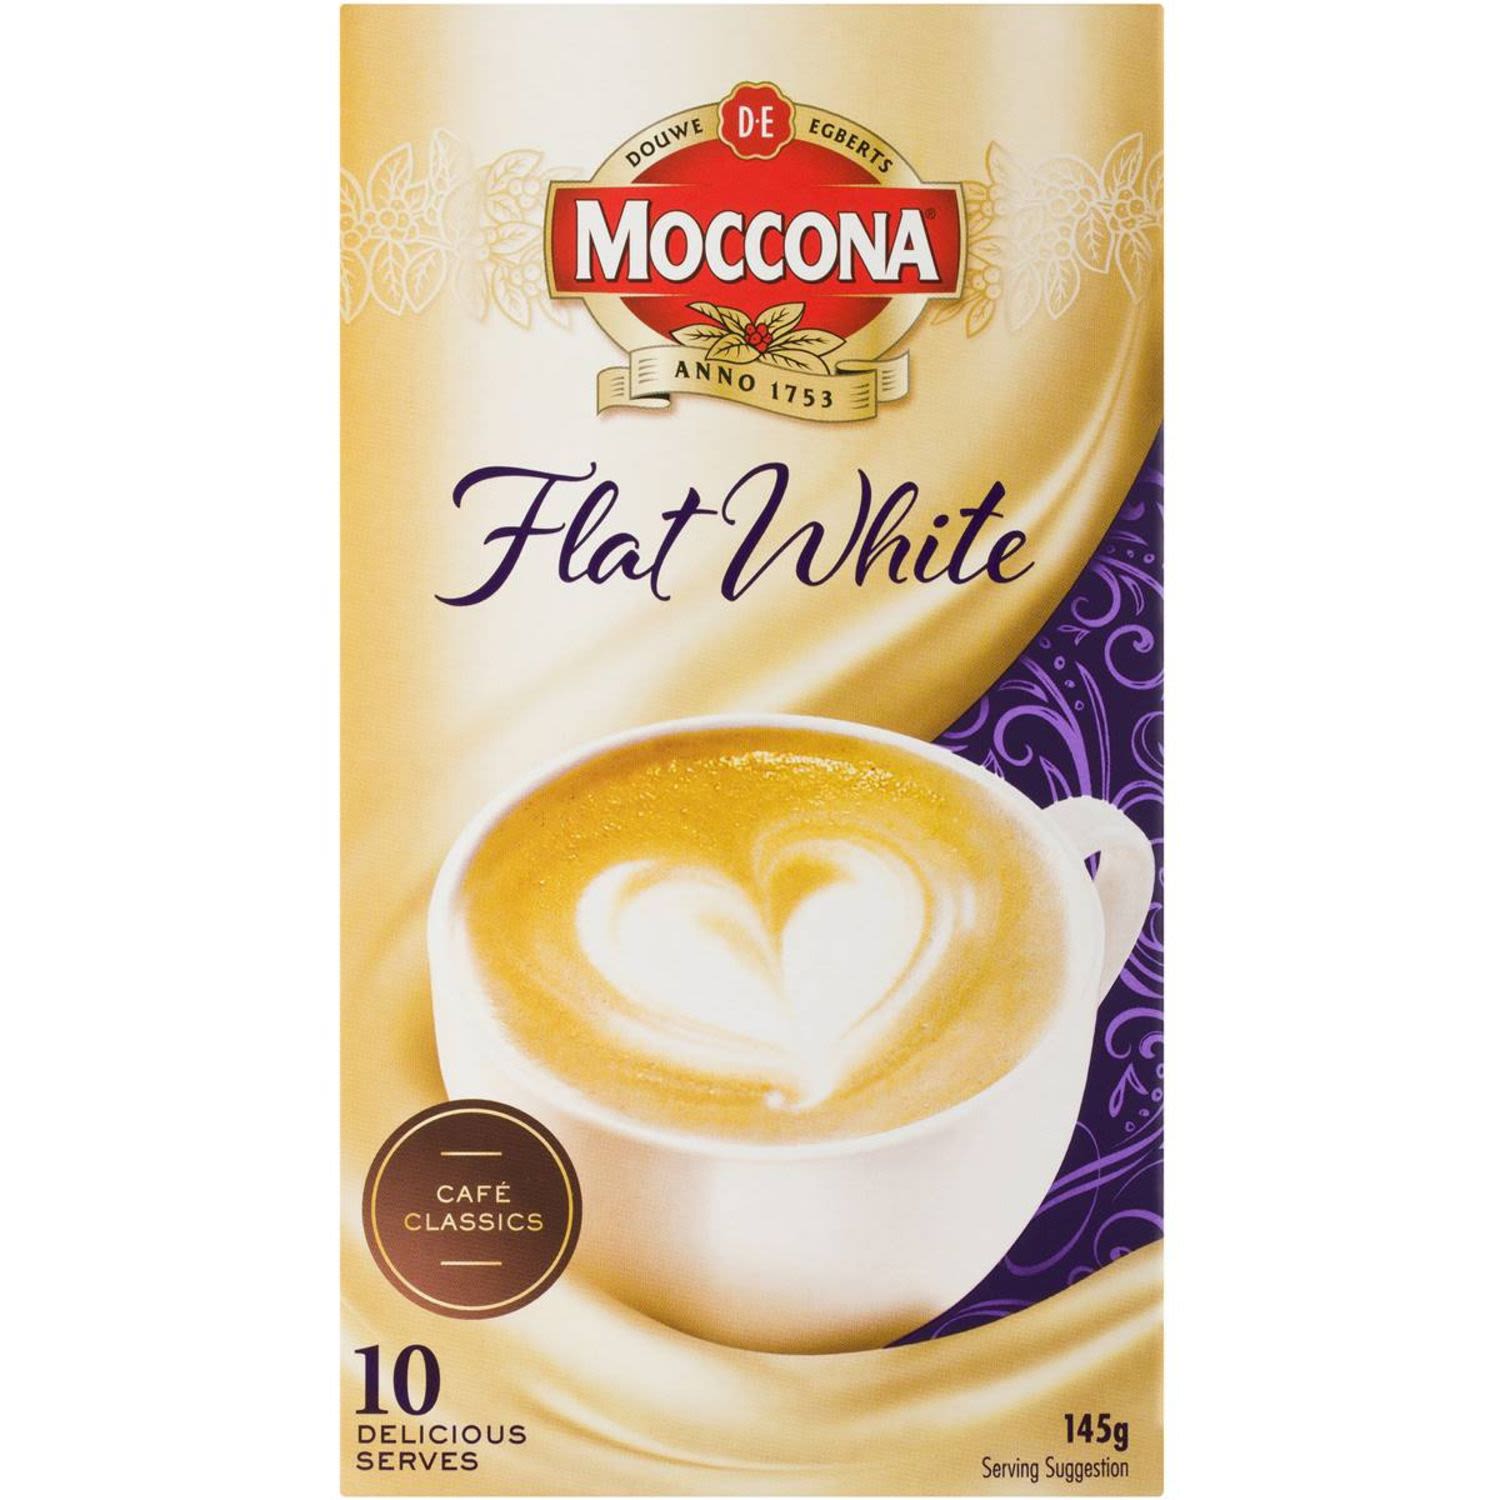 Moccona Flat White, 10 Each